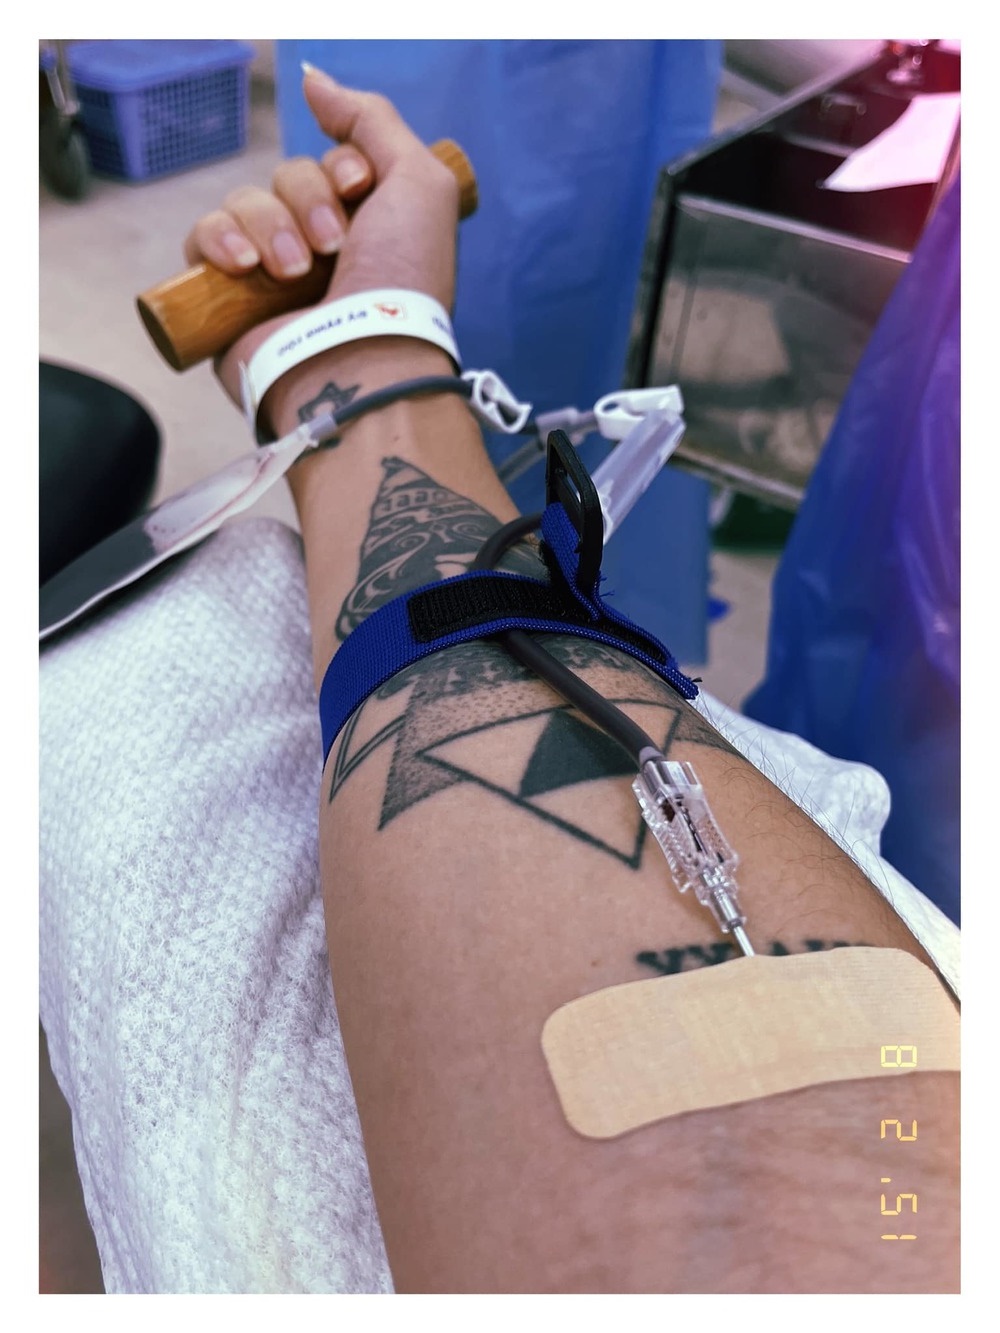 Loạt sao Việt đi hiến máu mùa dịch khi kho máu cạn